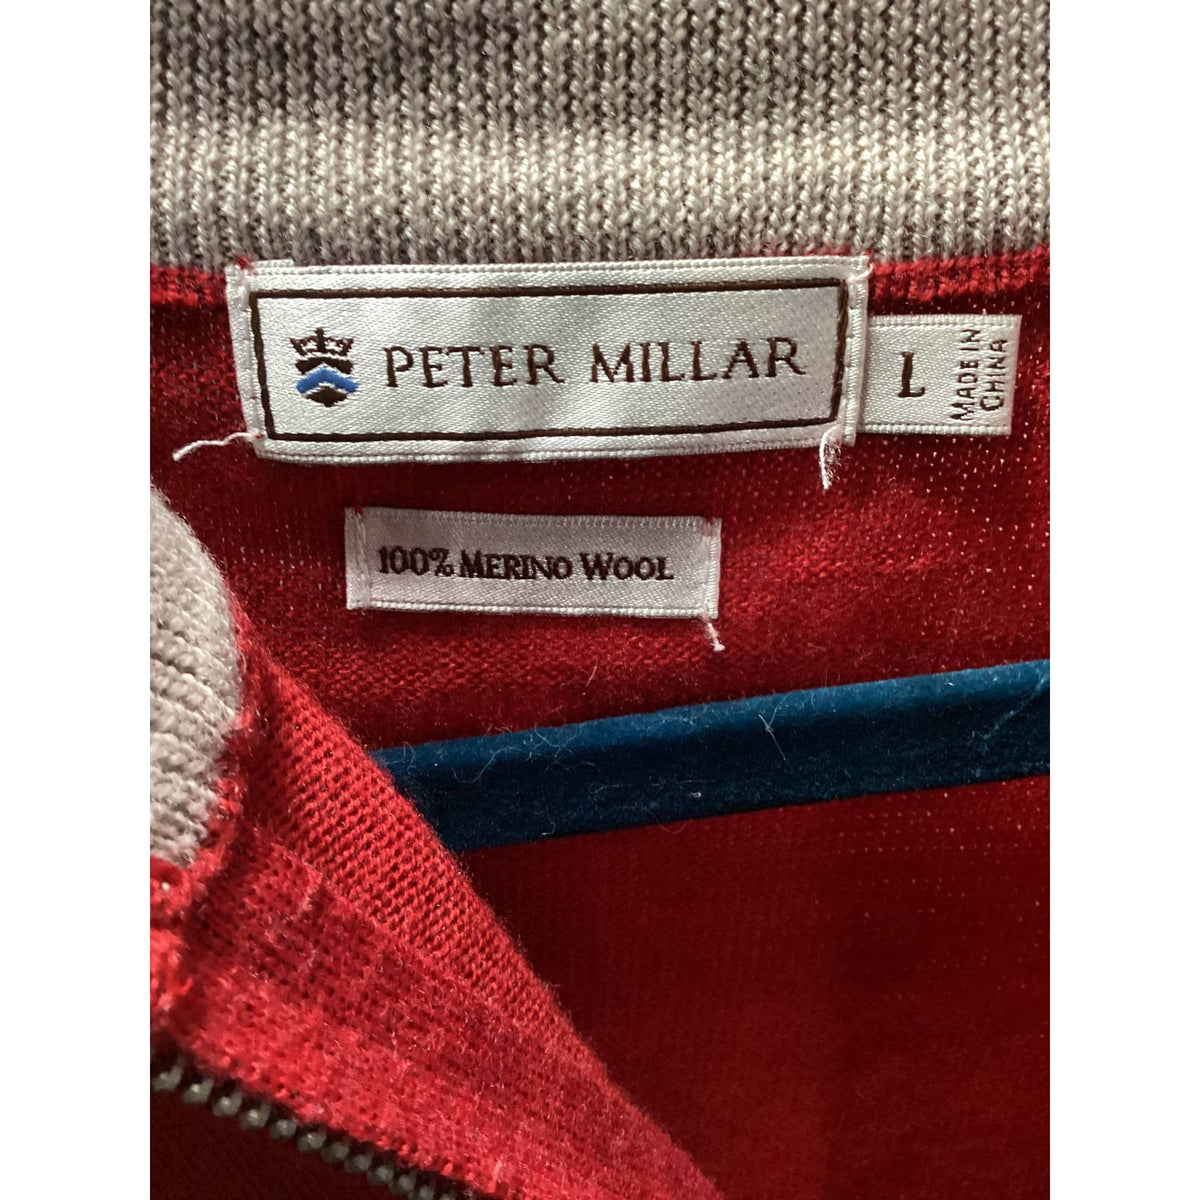 Peter Millar Red 100% Merino Wool ¼ Zip Vest Sz. Large